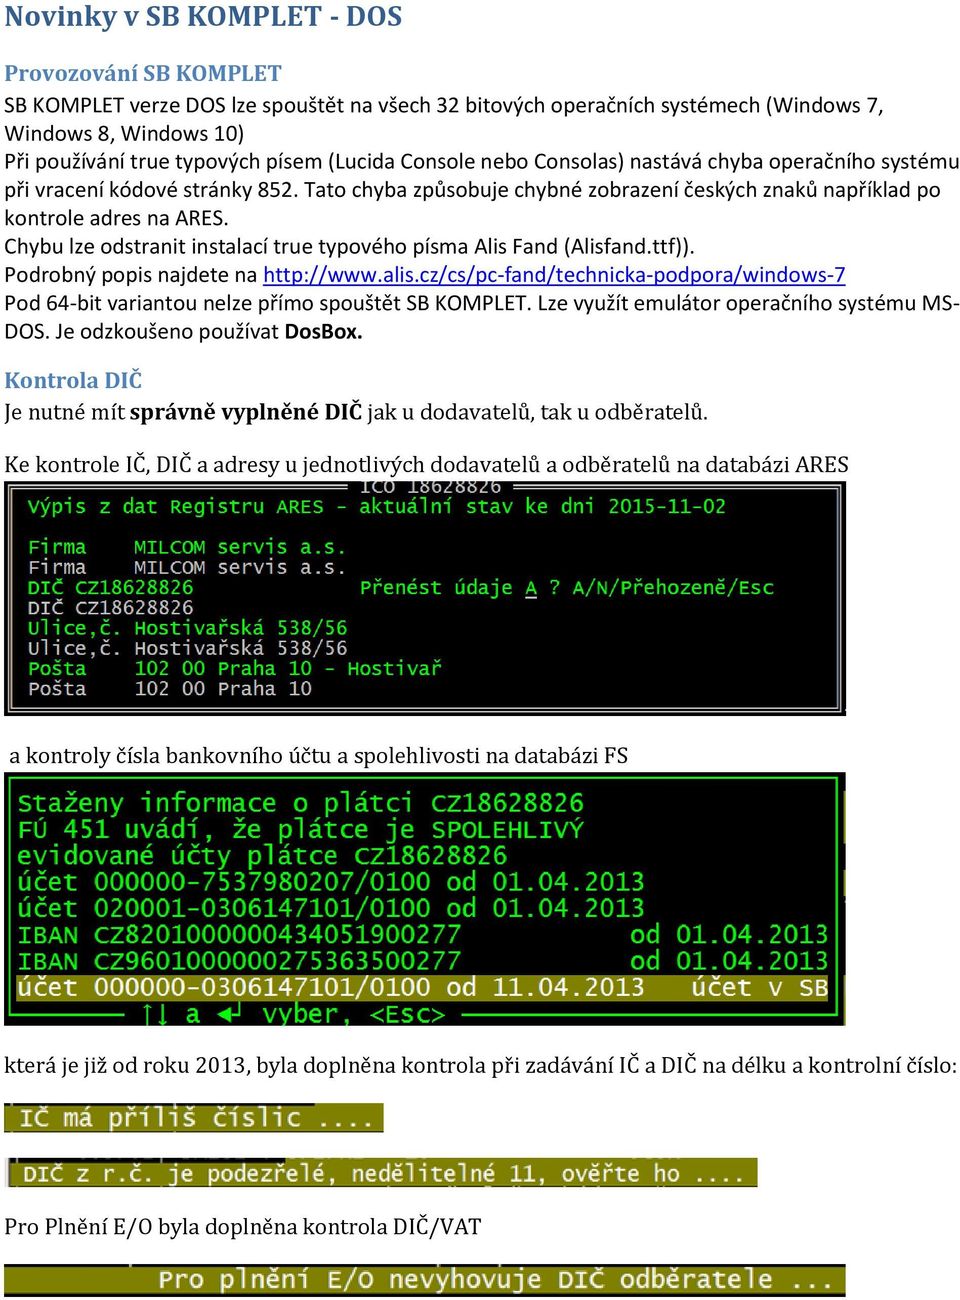 Chybu lze odstranit instalací true typového písma Alis Fand (Alisfand.ttf)). Podrobný popis najdete na http://www.alis.